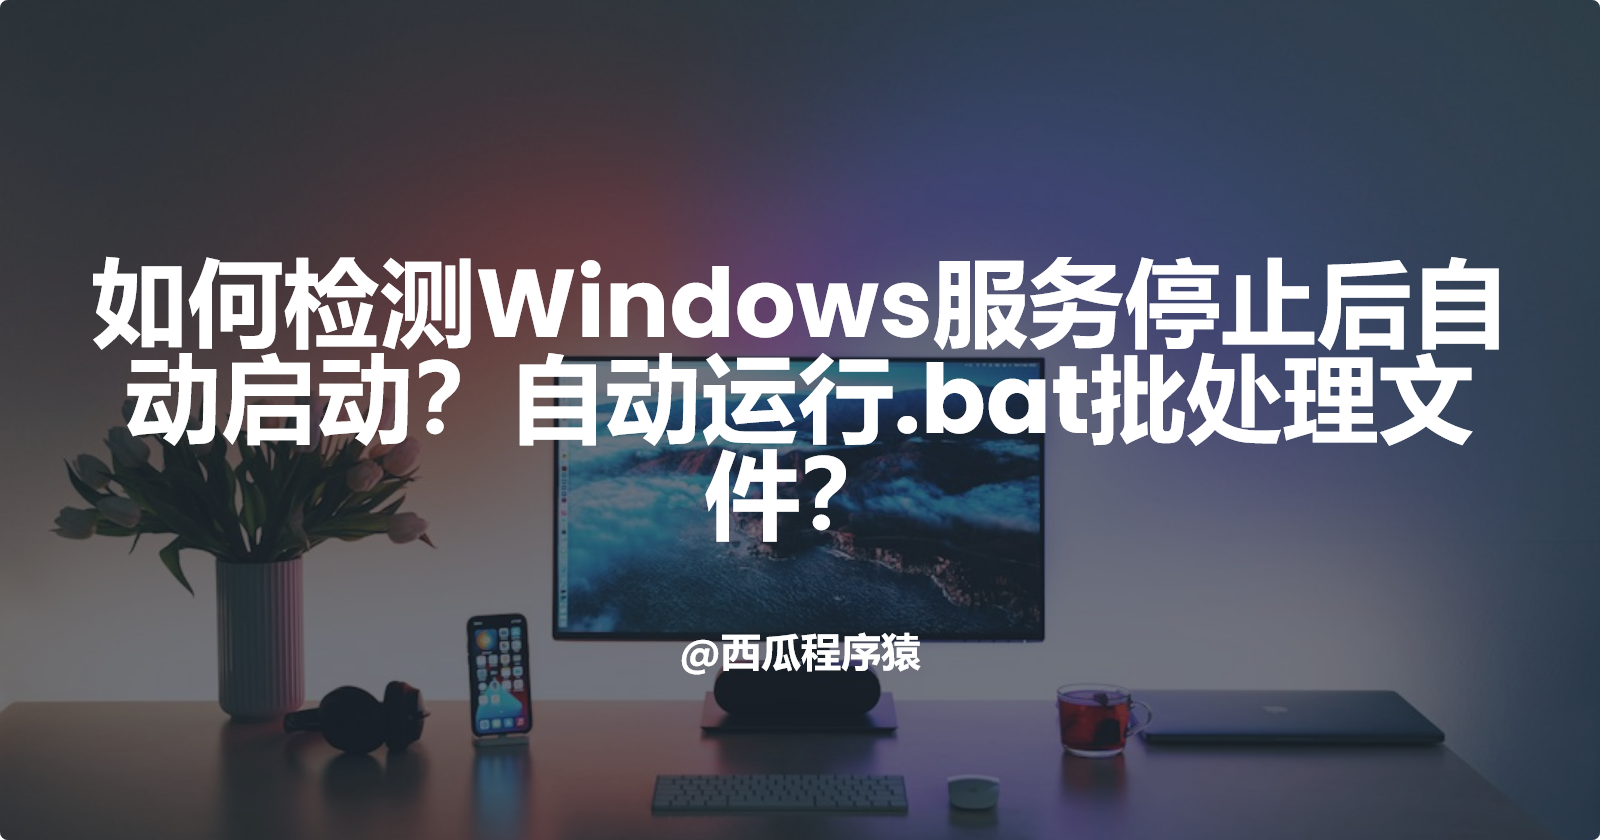 如何检测Windows服务停止后自动启动？自动运行.bat批处理文件？_bat